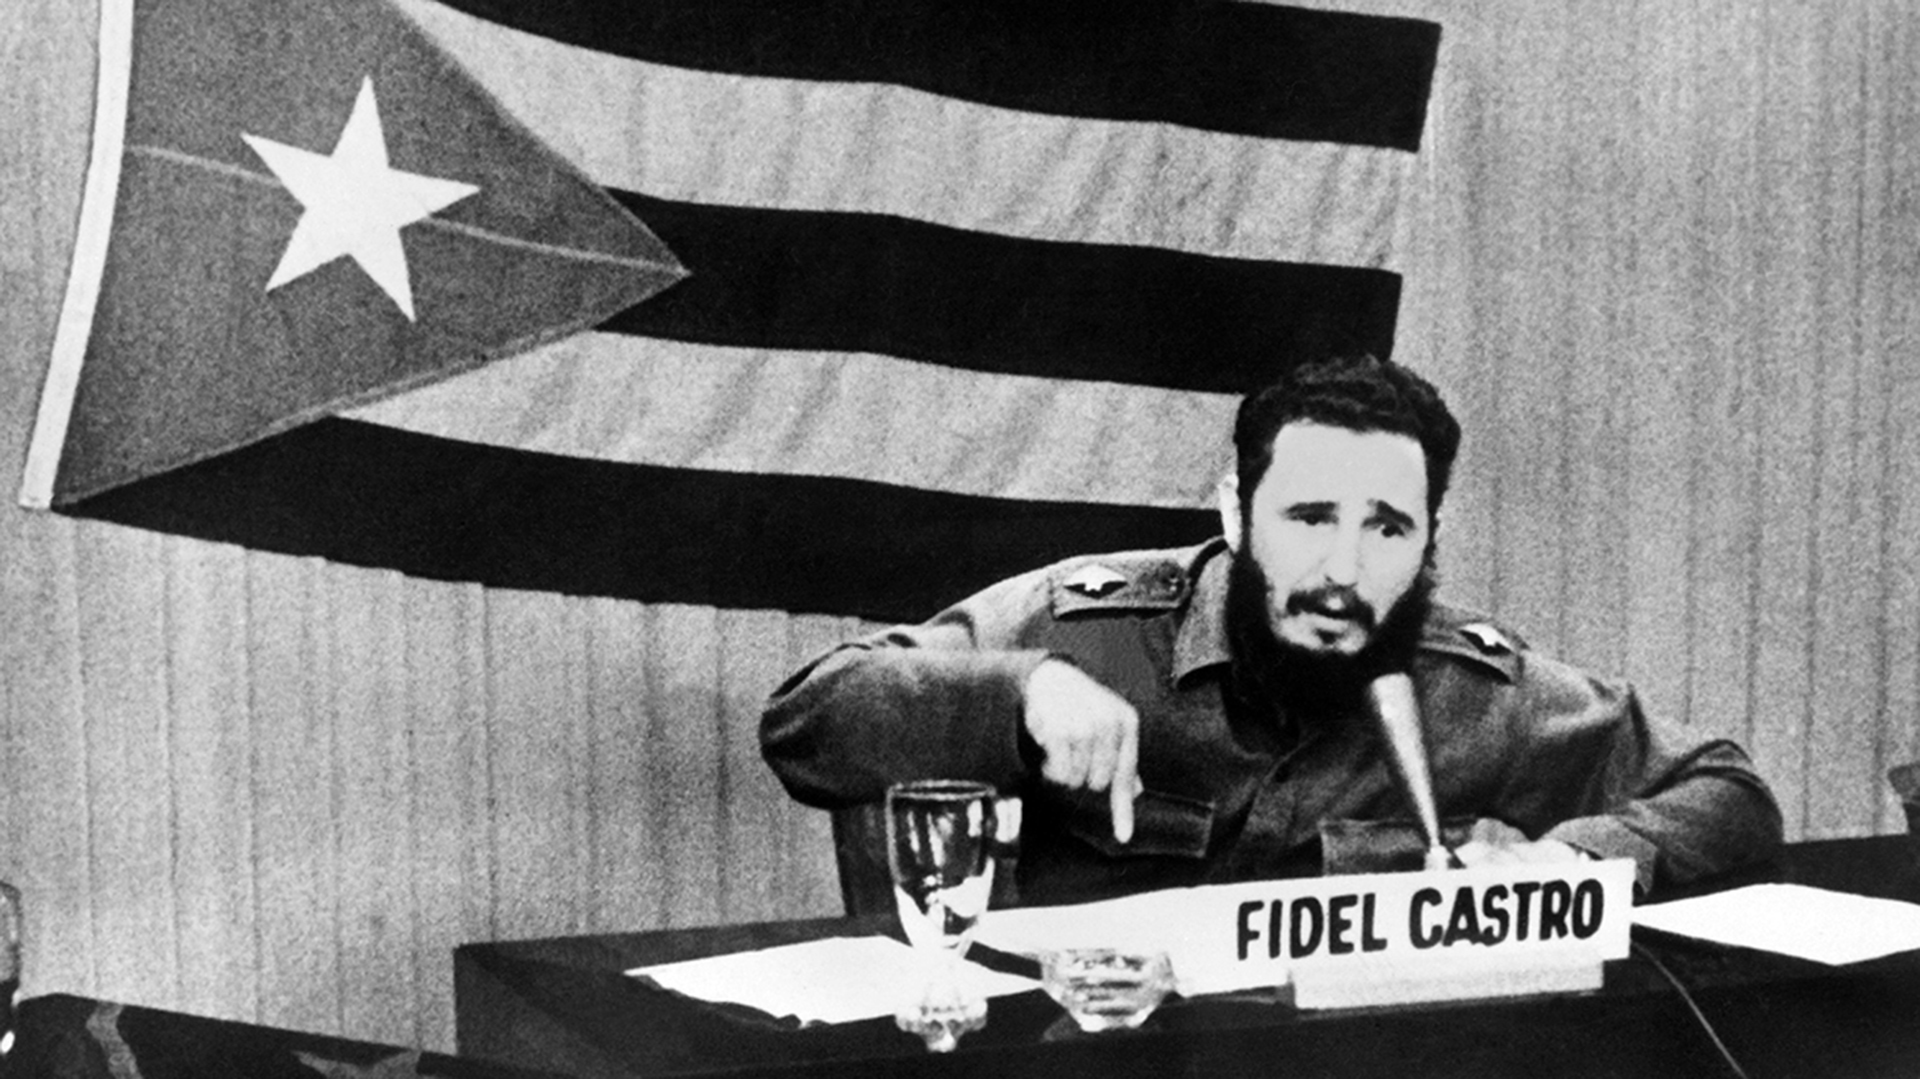 Discurso de Fidel Castro durante lo que se llamó "Crisis de los Misiles", 1962 